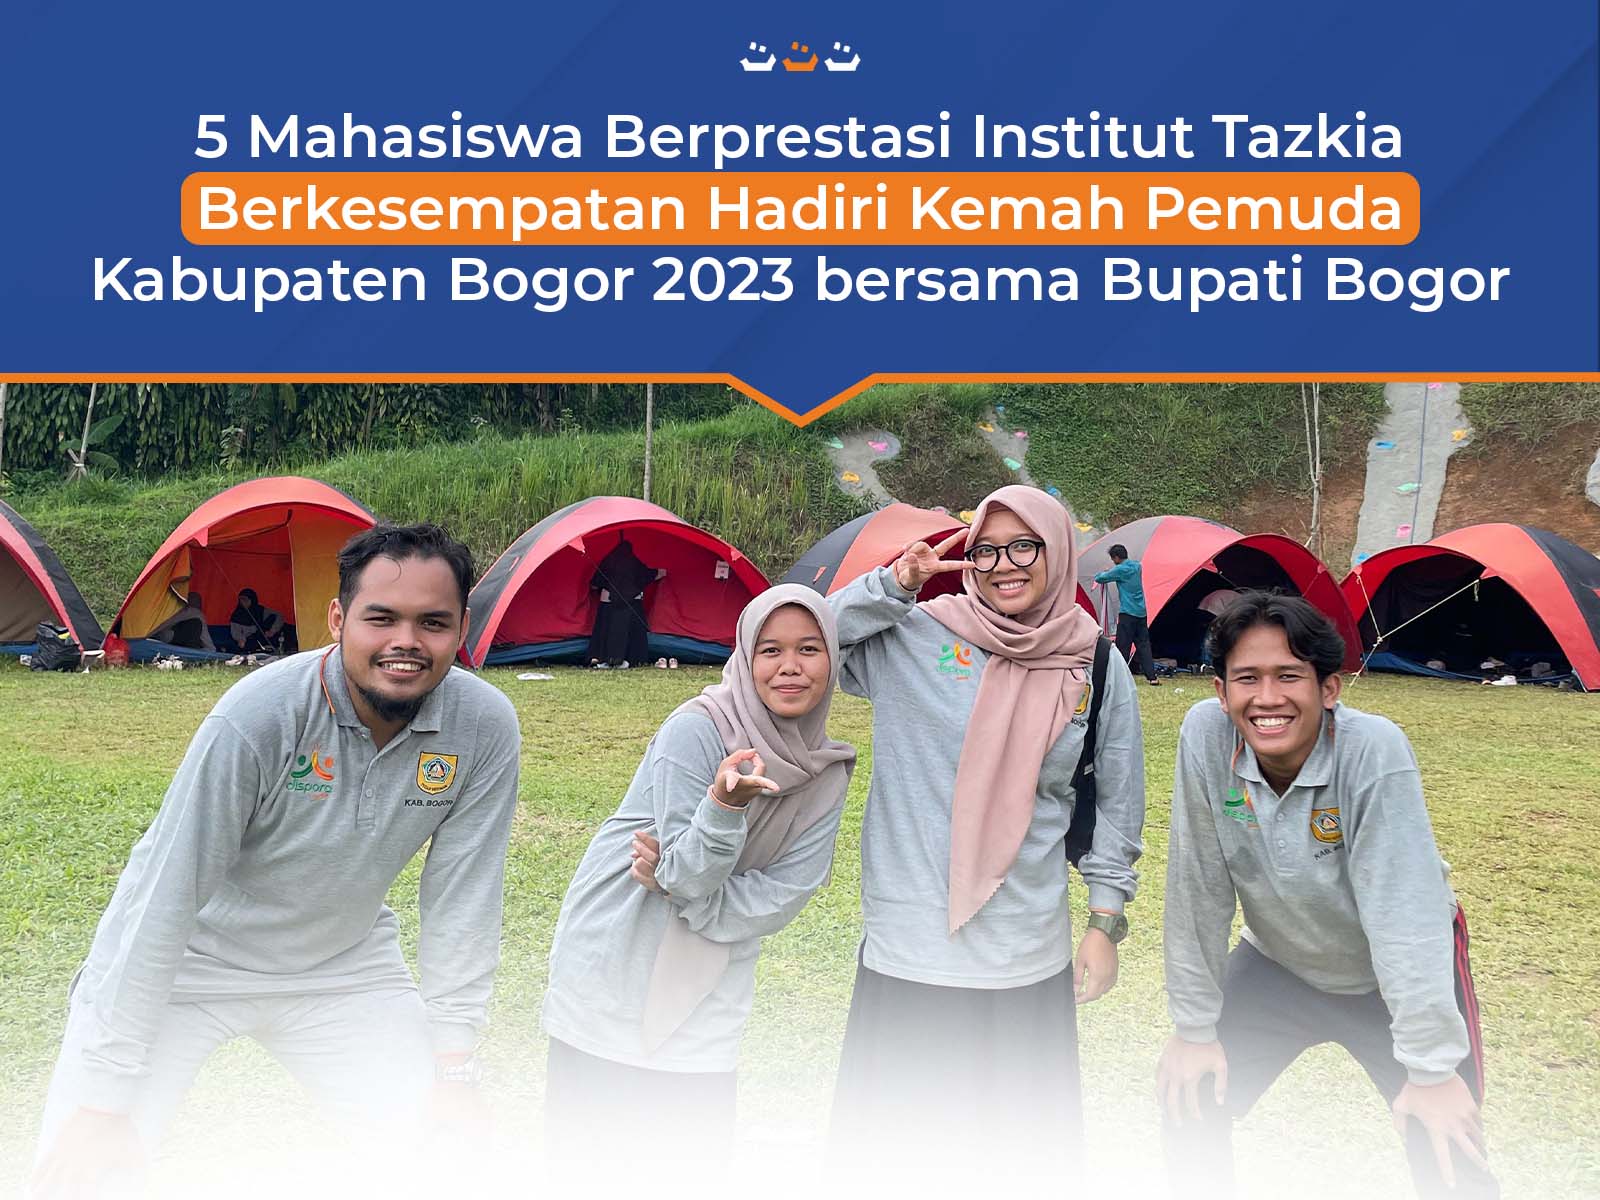 5 Mahasiswa Berprestasi Institut Tazkia Berkesempatan Hadiri Kemah Pemuda Kabupaten Bogor 2023 bersama Bupati Bogor